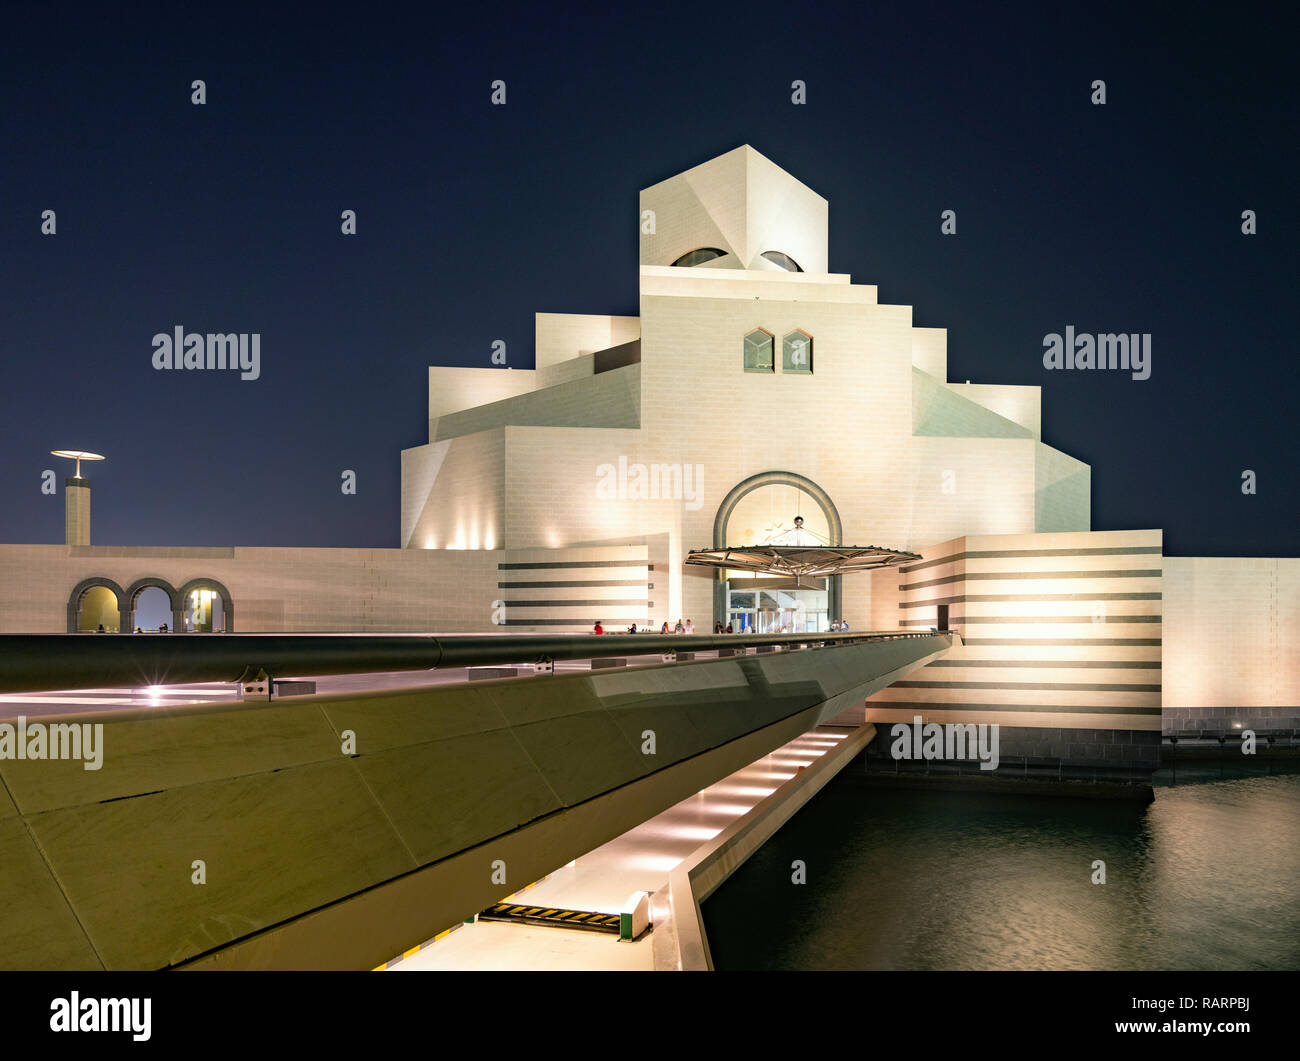 Vue de la nuit de musée d'Art islamique de Doha, au Qatar. Architecte IM Pei Banque D'Images